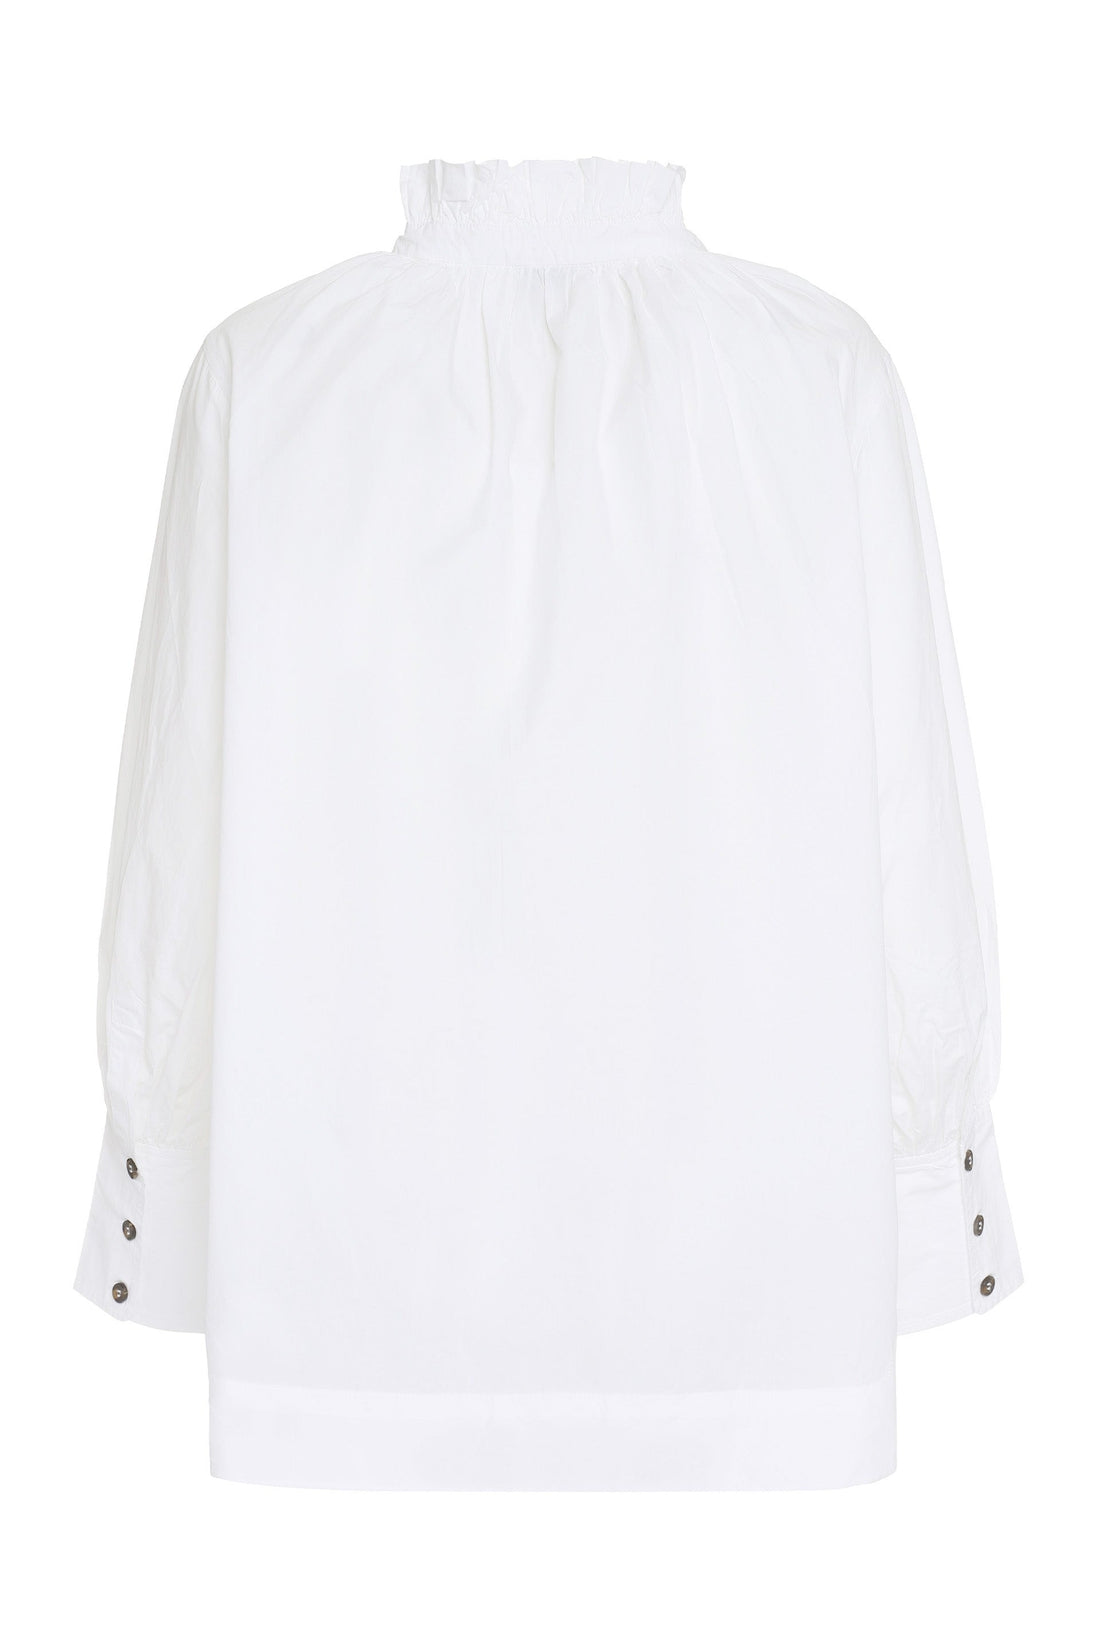 GANNI-OUTLET-SALE-Cotton poplin shirt-ARCHIVIST